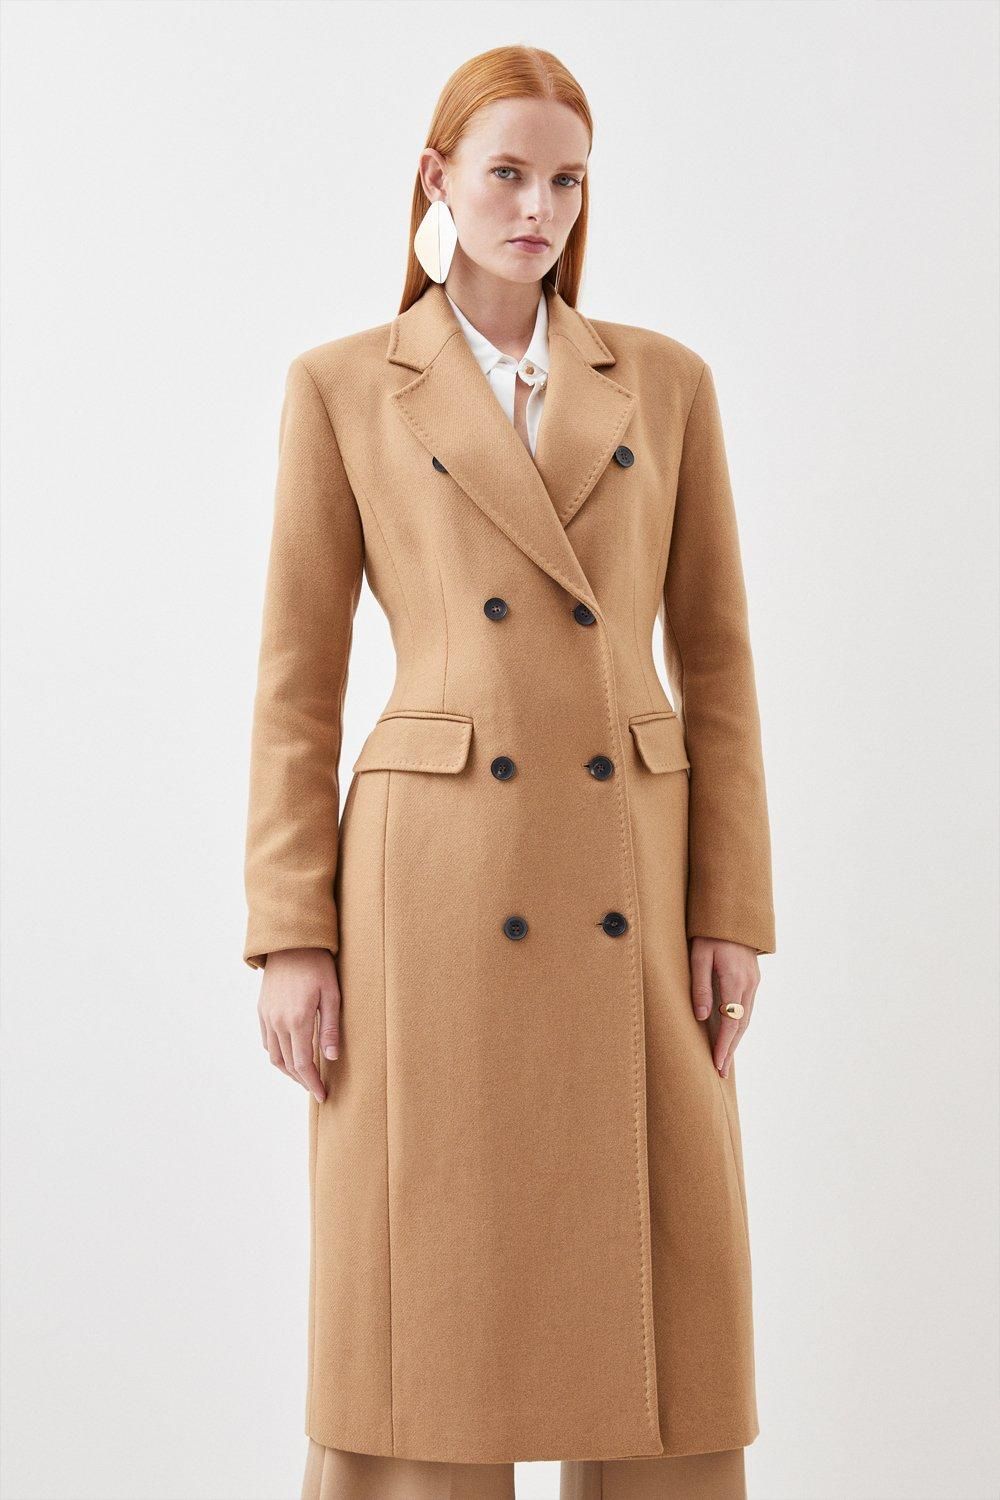 Italian Wool Blend Double Breasted Tailored Coat | Karen Millen UK + IE + DE + NL